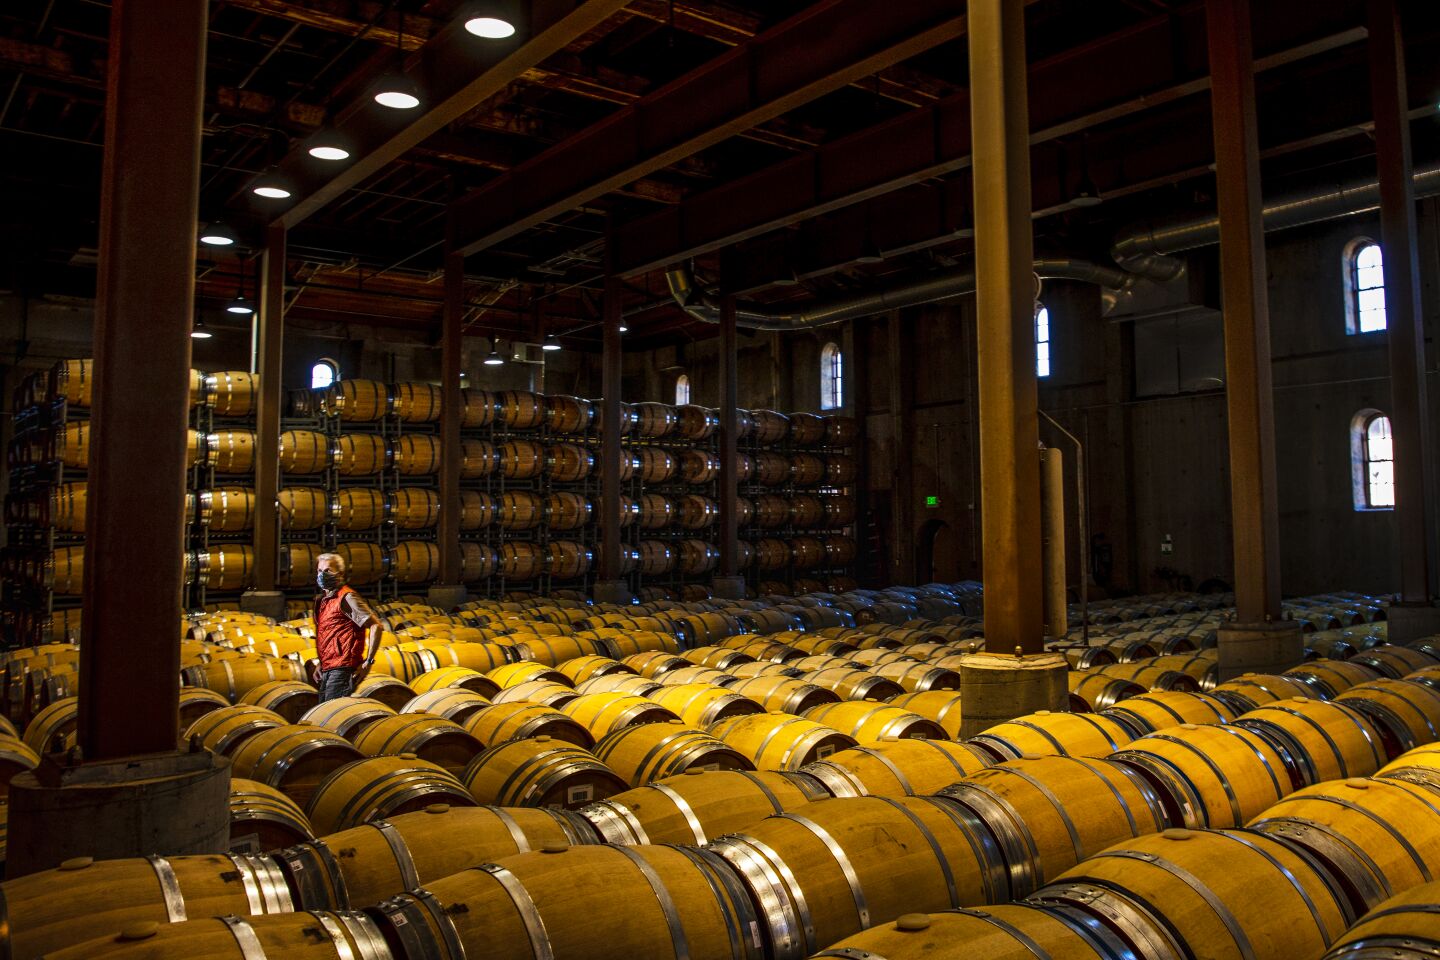 Wine barrels fill a large room